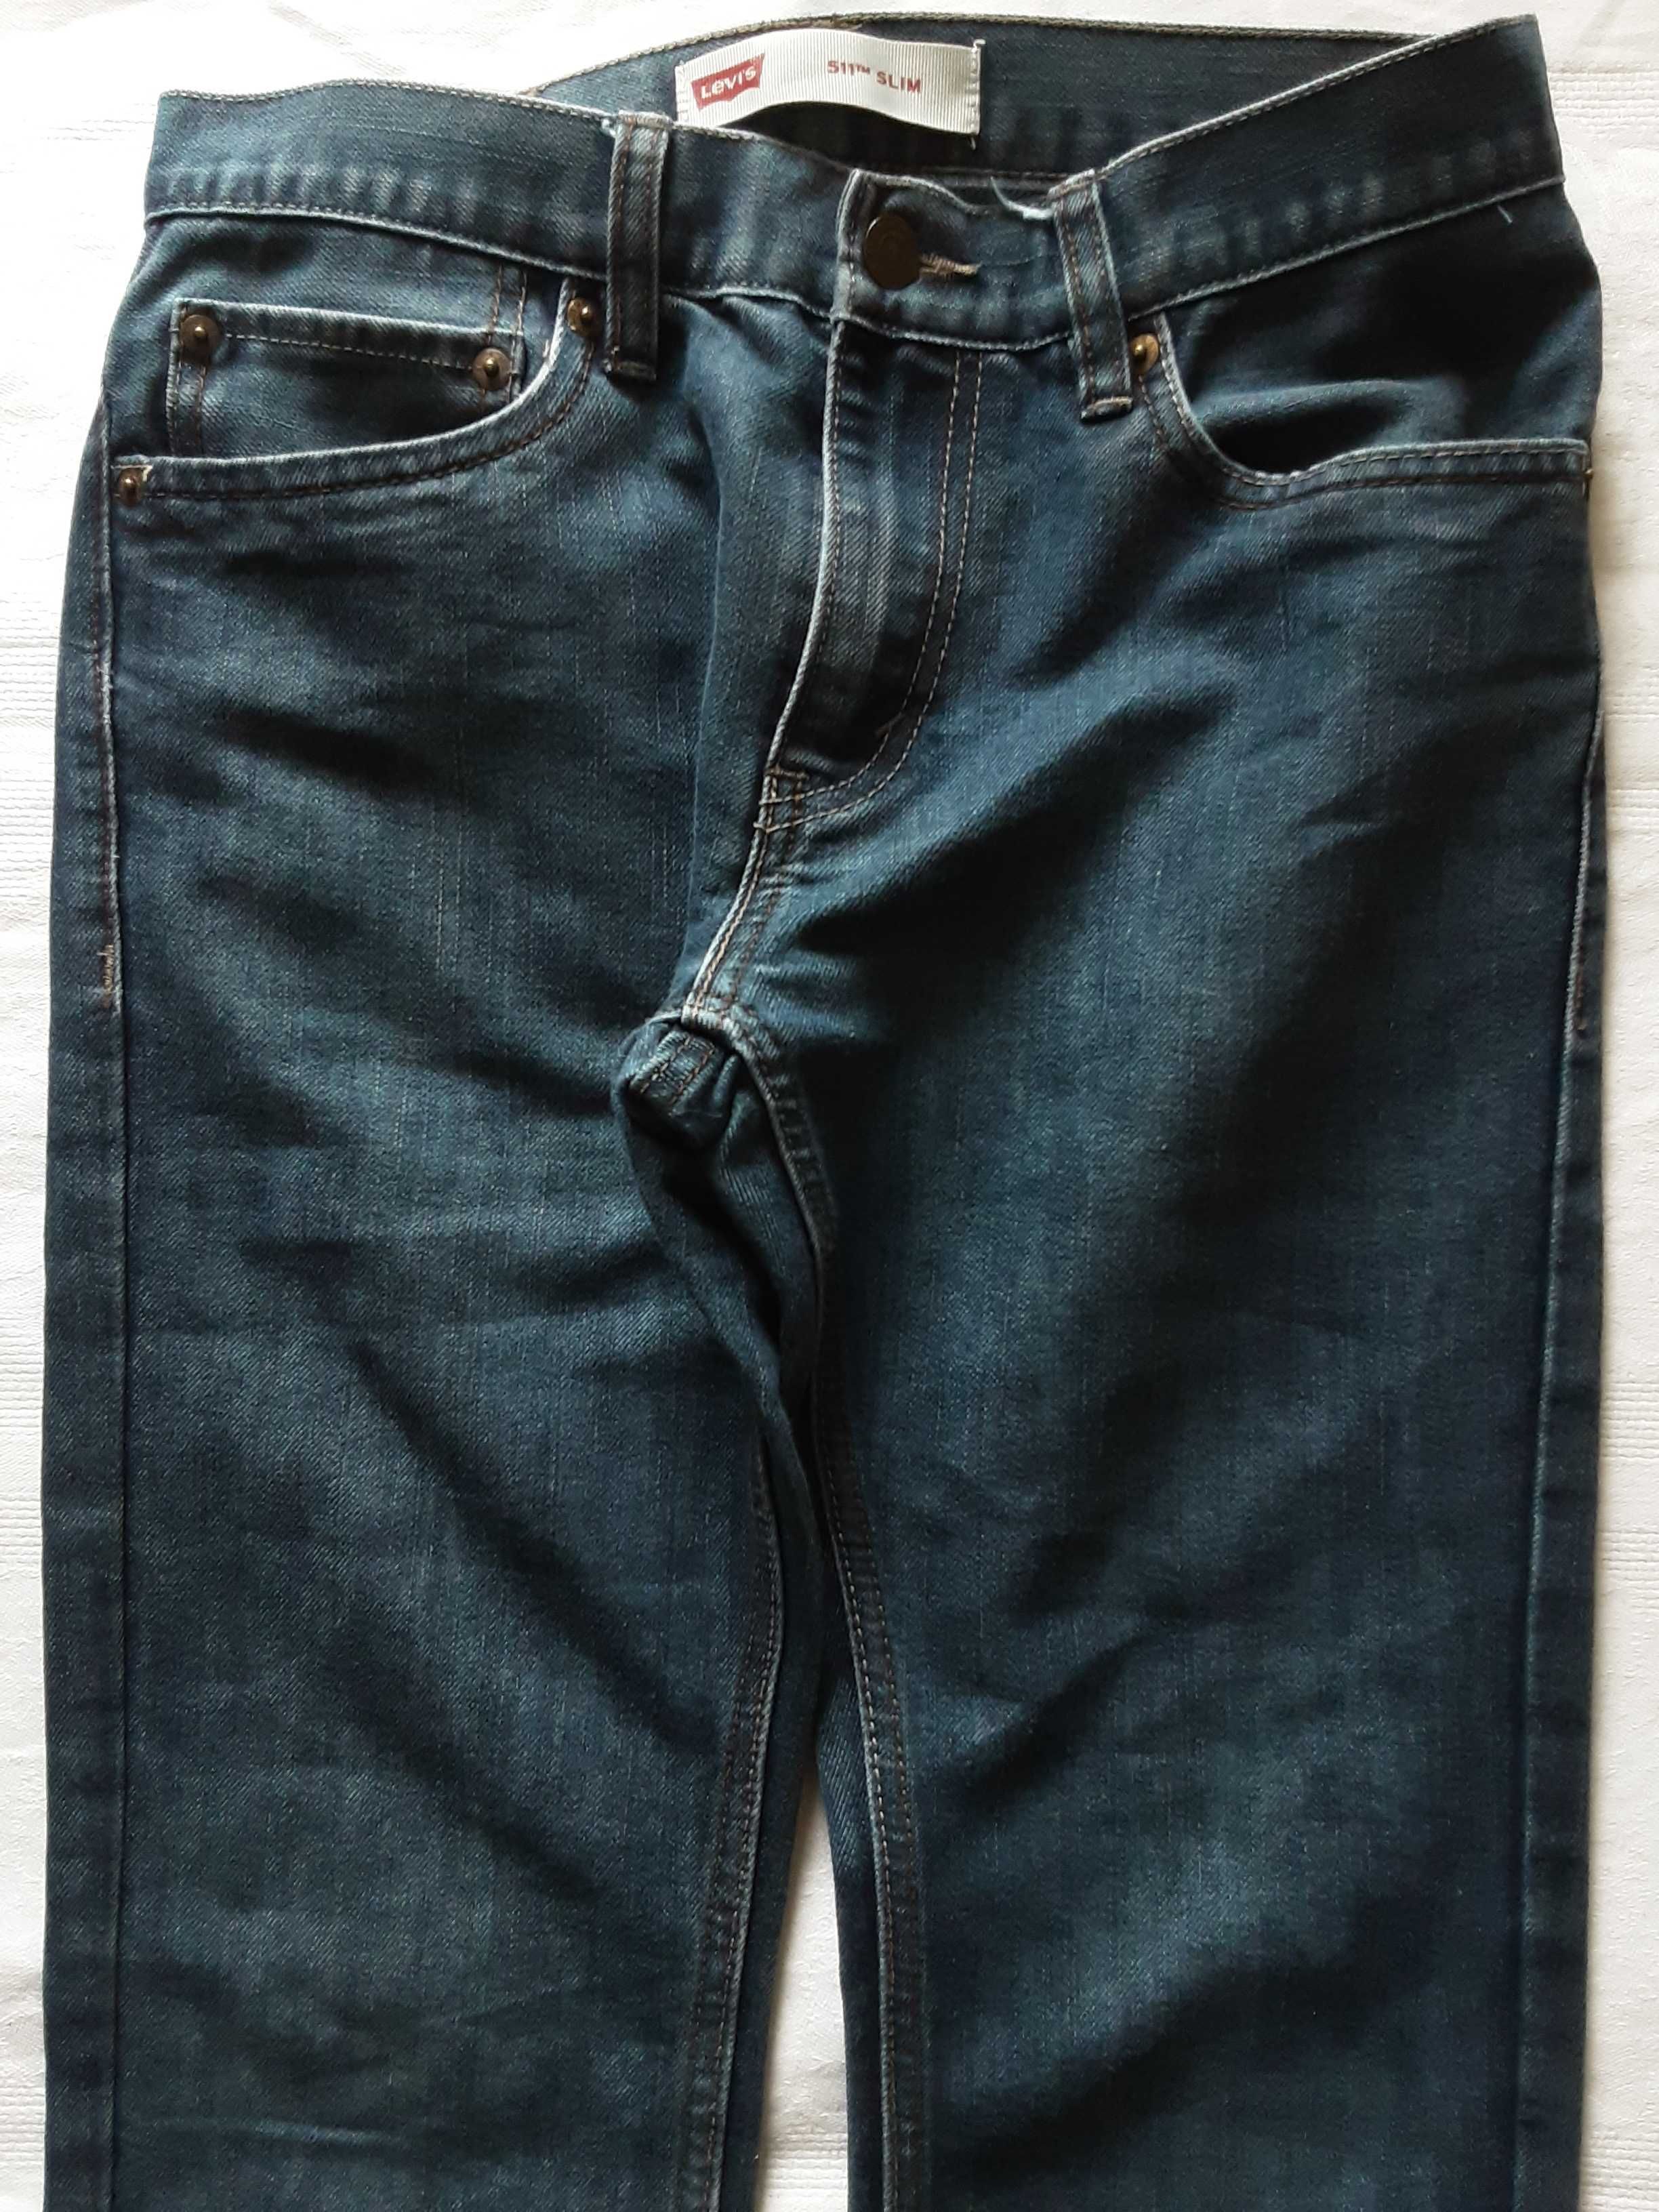 S Levis 511 slim spodnie jeans